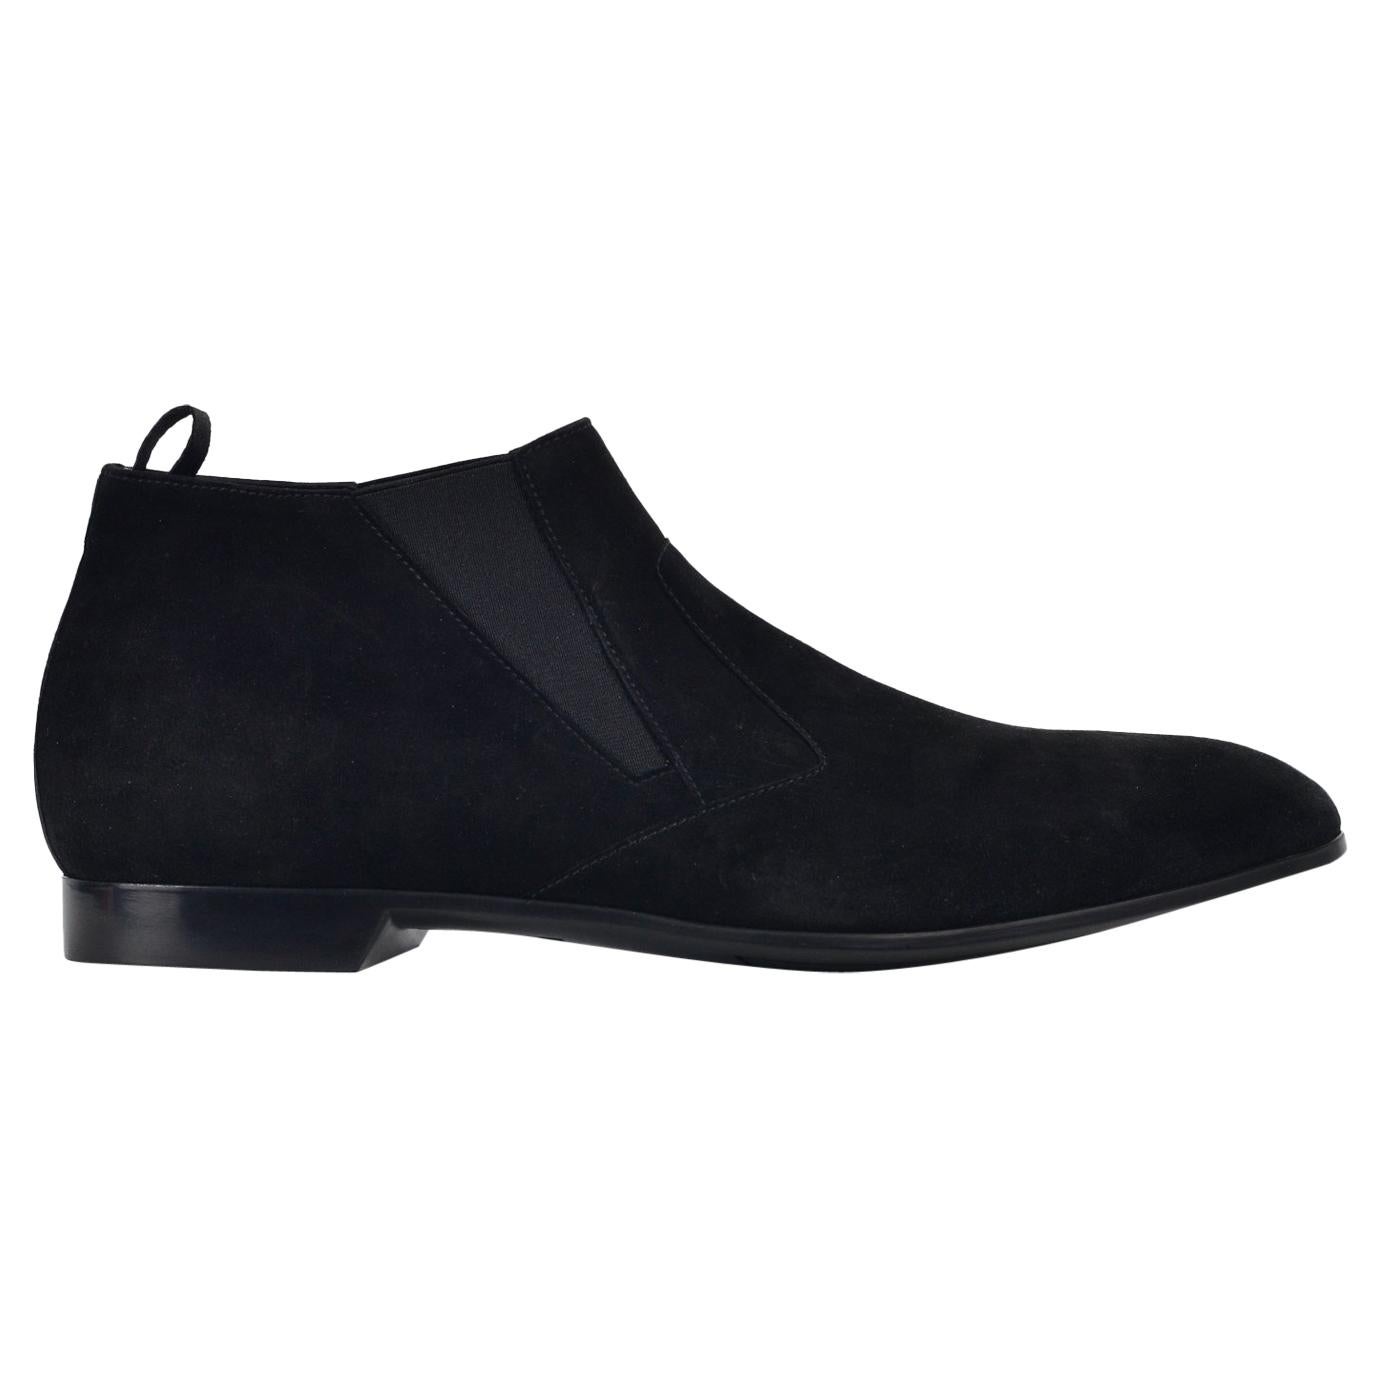 Prada Men's Black Suede Slip On Low Heel Elegance Loafers